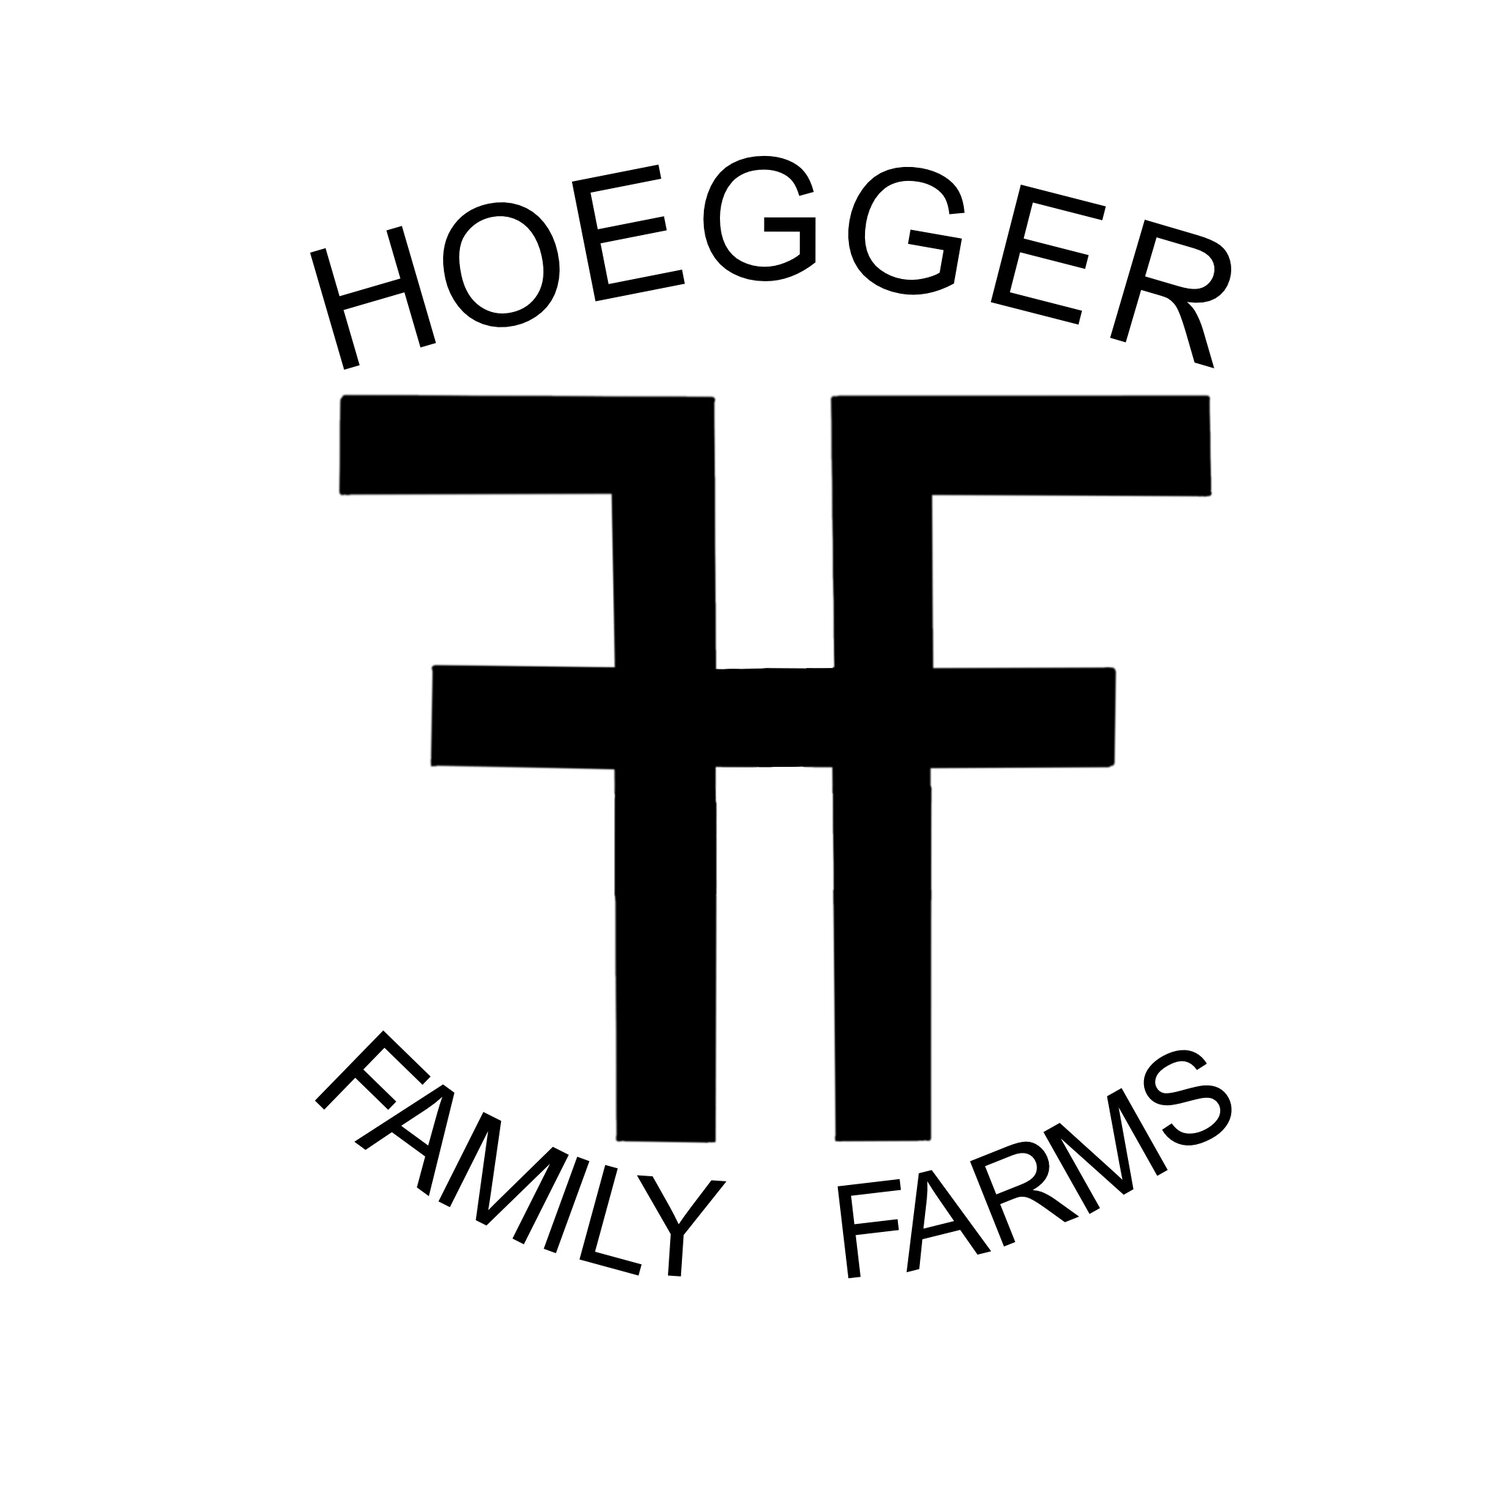 Hoegger Family Farms